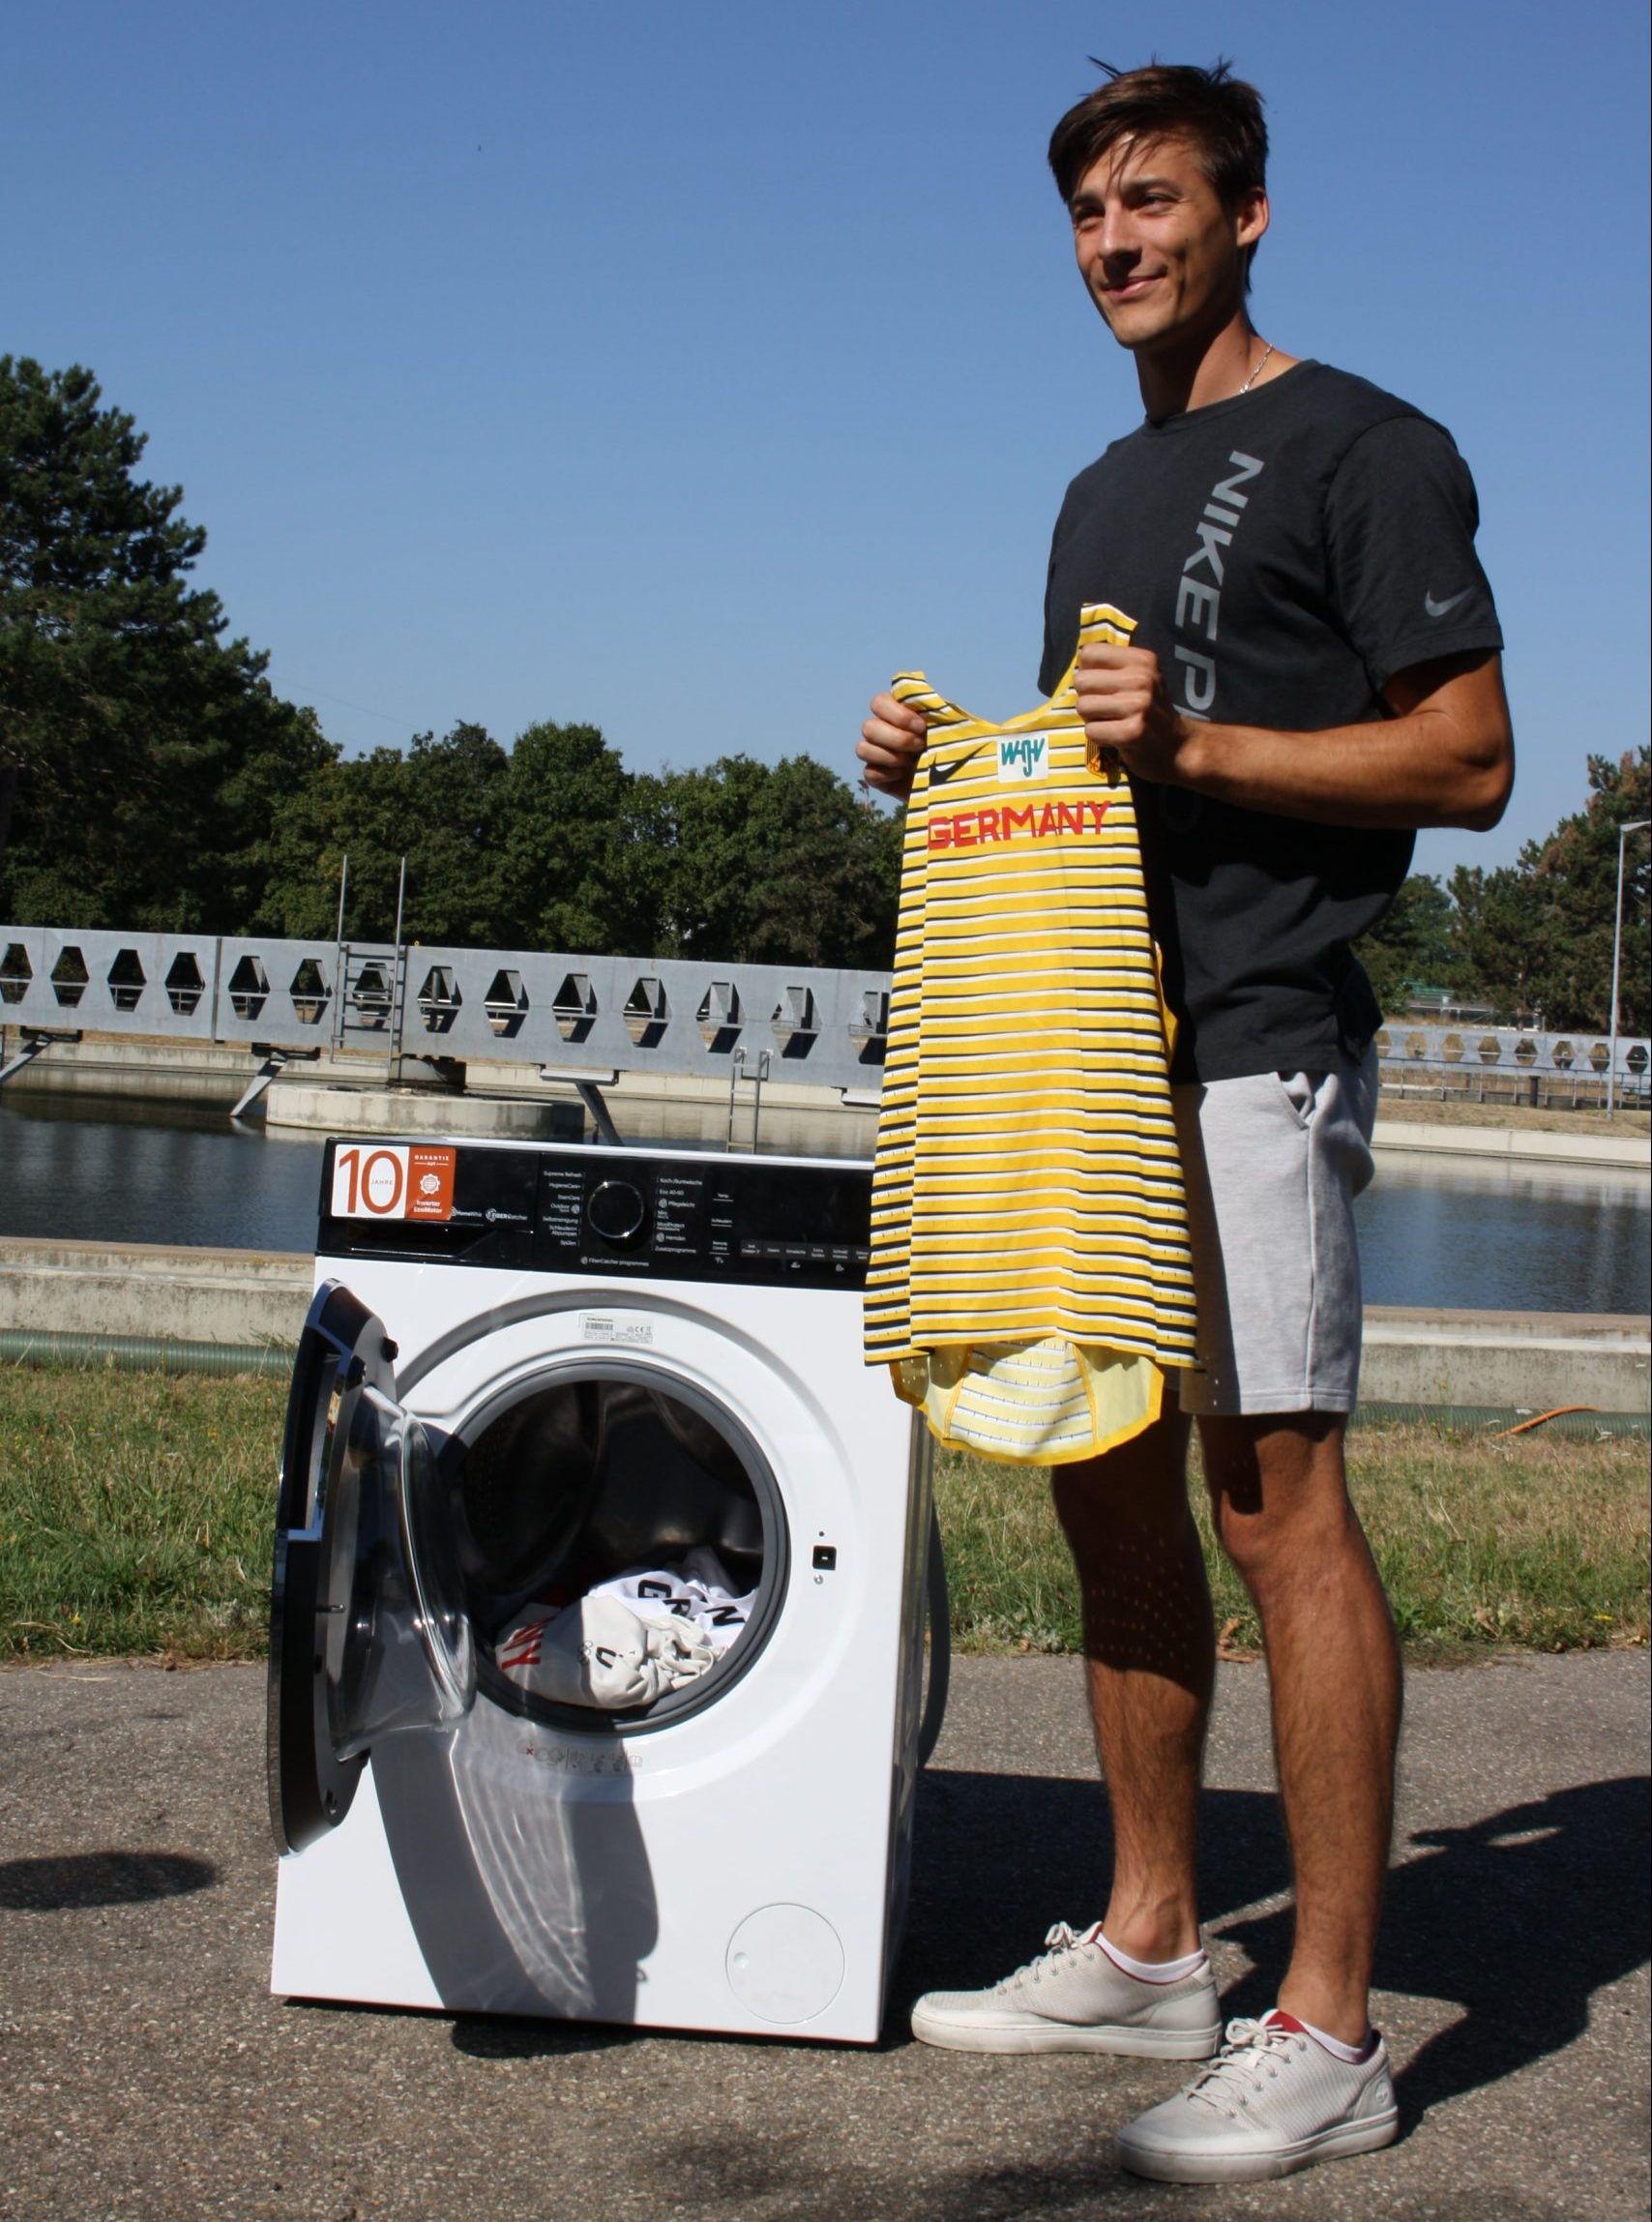 Oleg von Wasser 3.0 ist als Stabhochsprung-Profi auch Botschafter des Waschmaschinen-Projekts